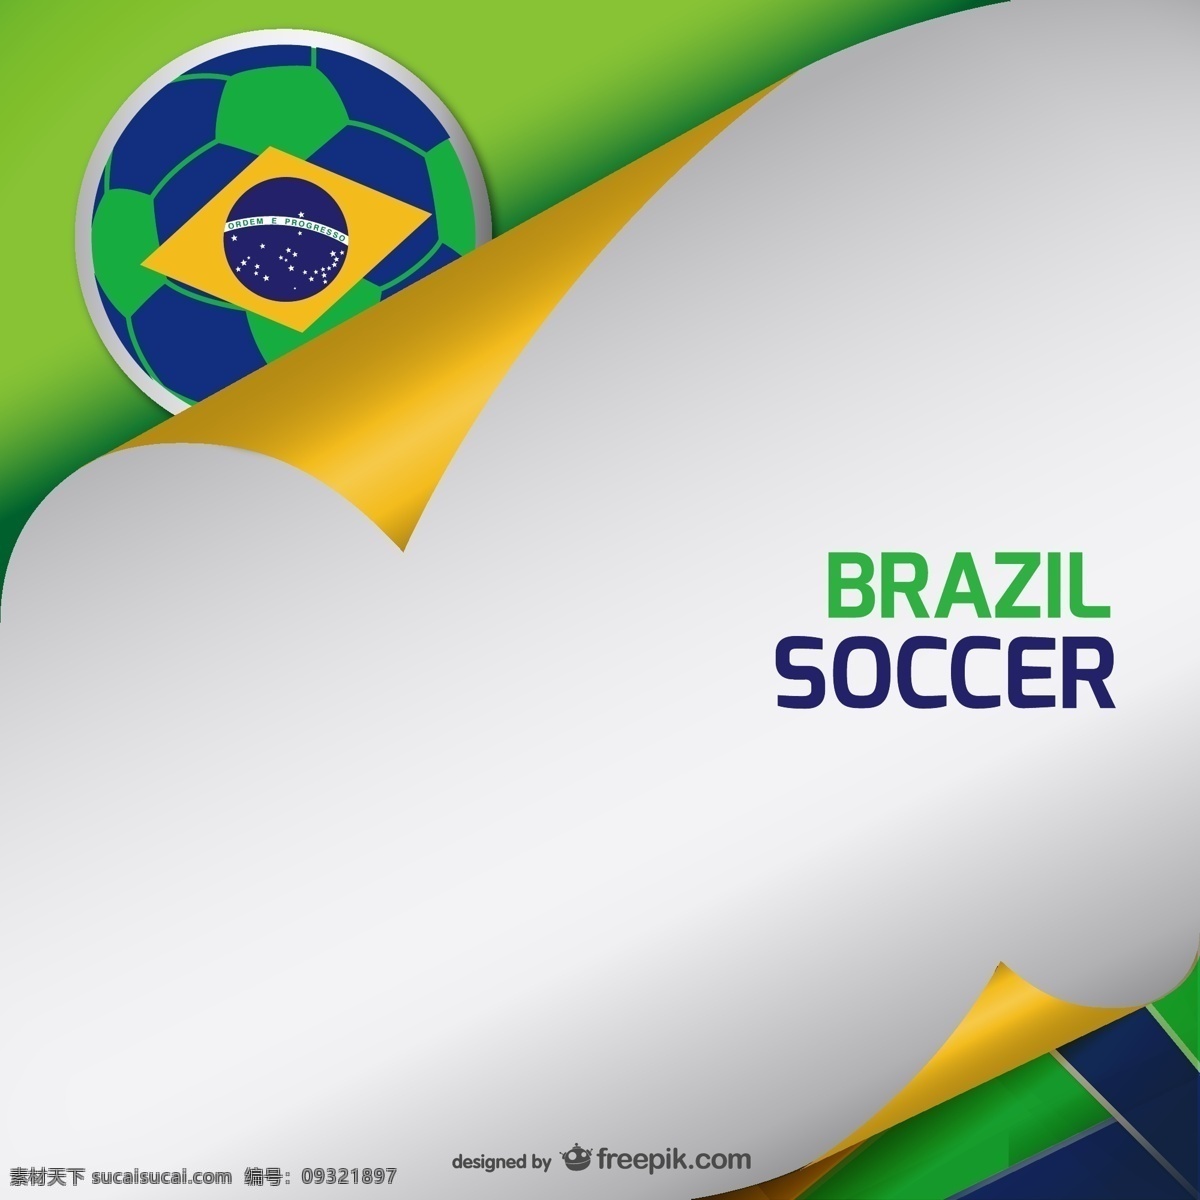 巴西 世界杯 创意 背景 图 巴西国旗 巴西世界杯 创意背景 卷边 卷角背景 模板 设计稿 素材元素 文本背景 足球素材 纸张纹样 体育素材 源文件 矢量图